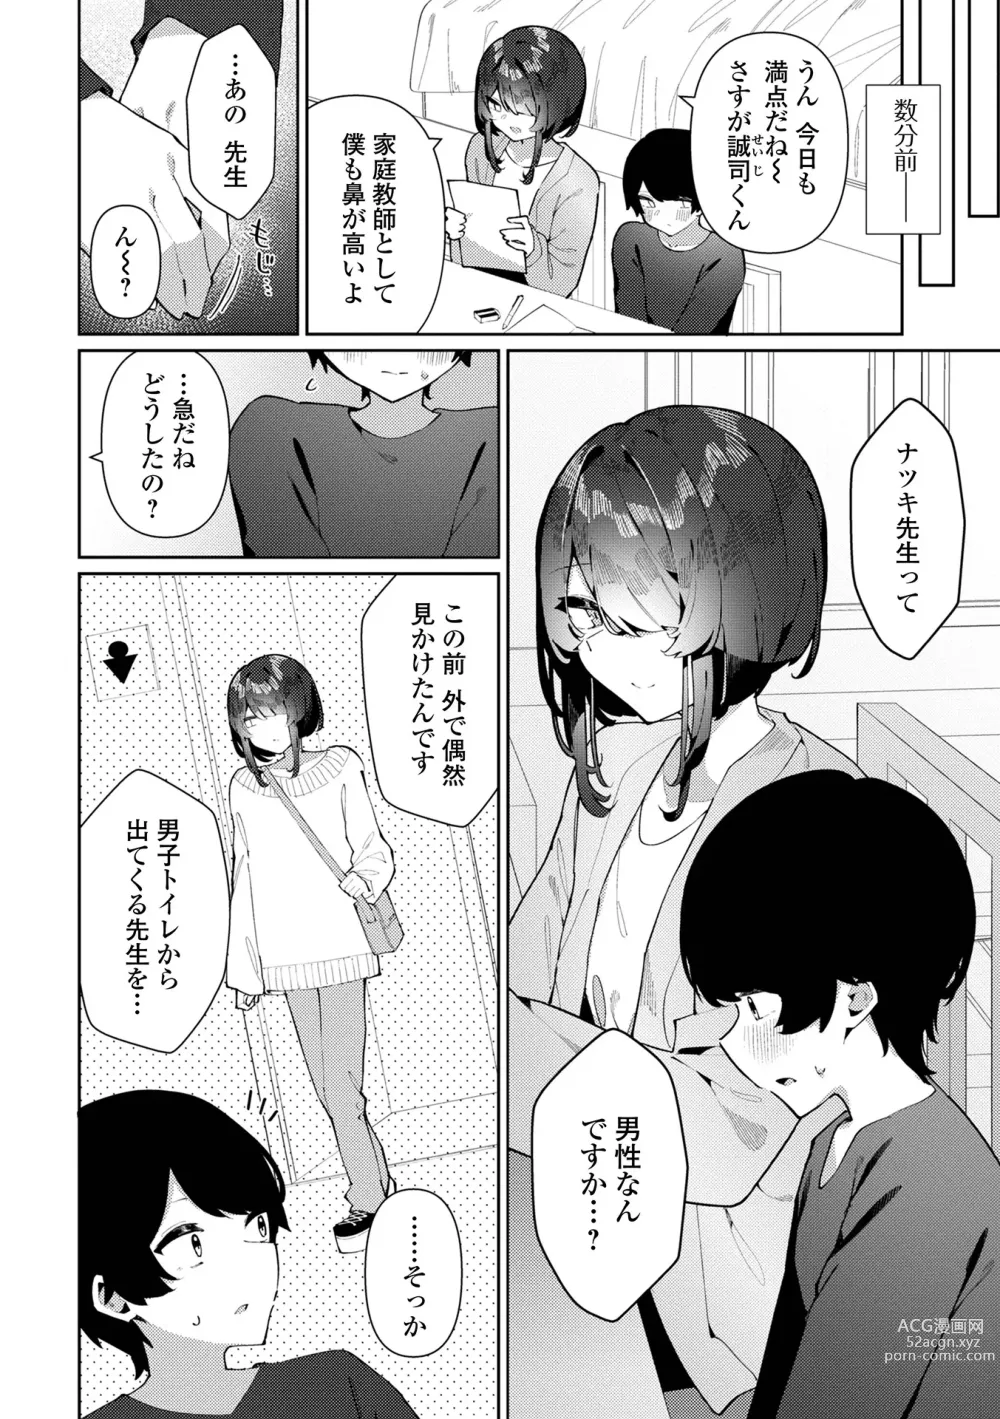 Page 4 of manga Gekkan Web Otoko no Ko-llection! S Vol. 90